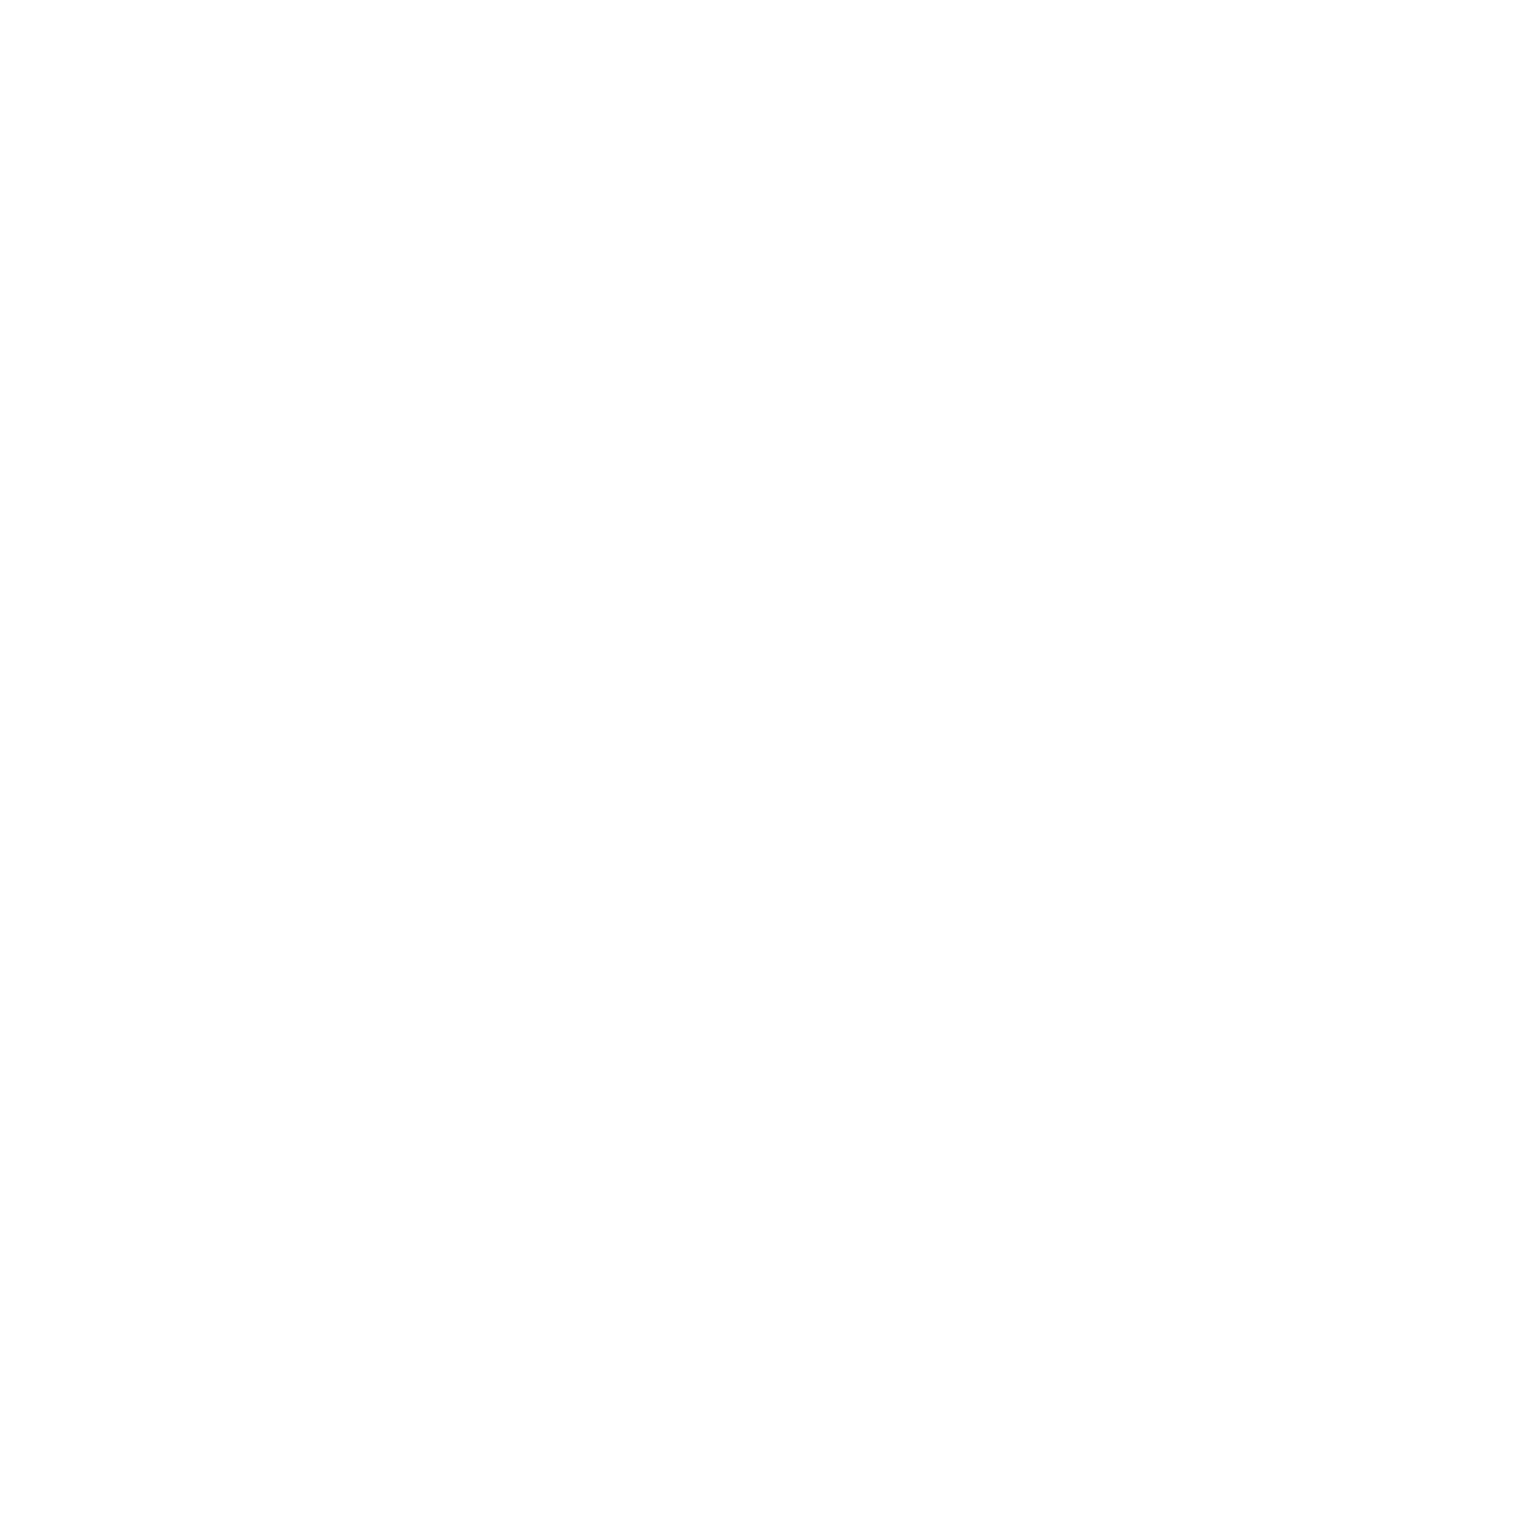 Yext logo pour fonds sombres (PNG transparent)